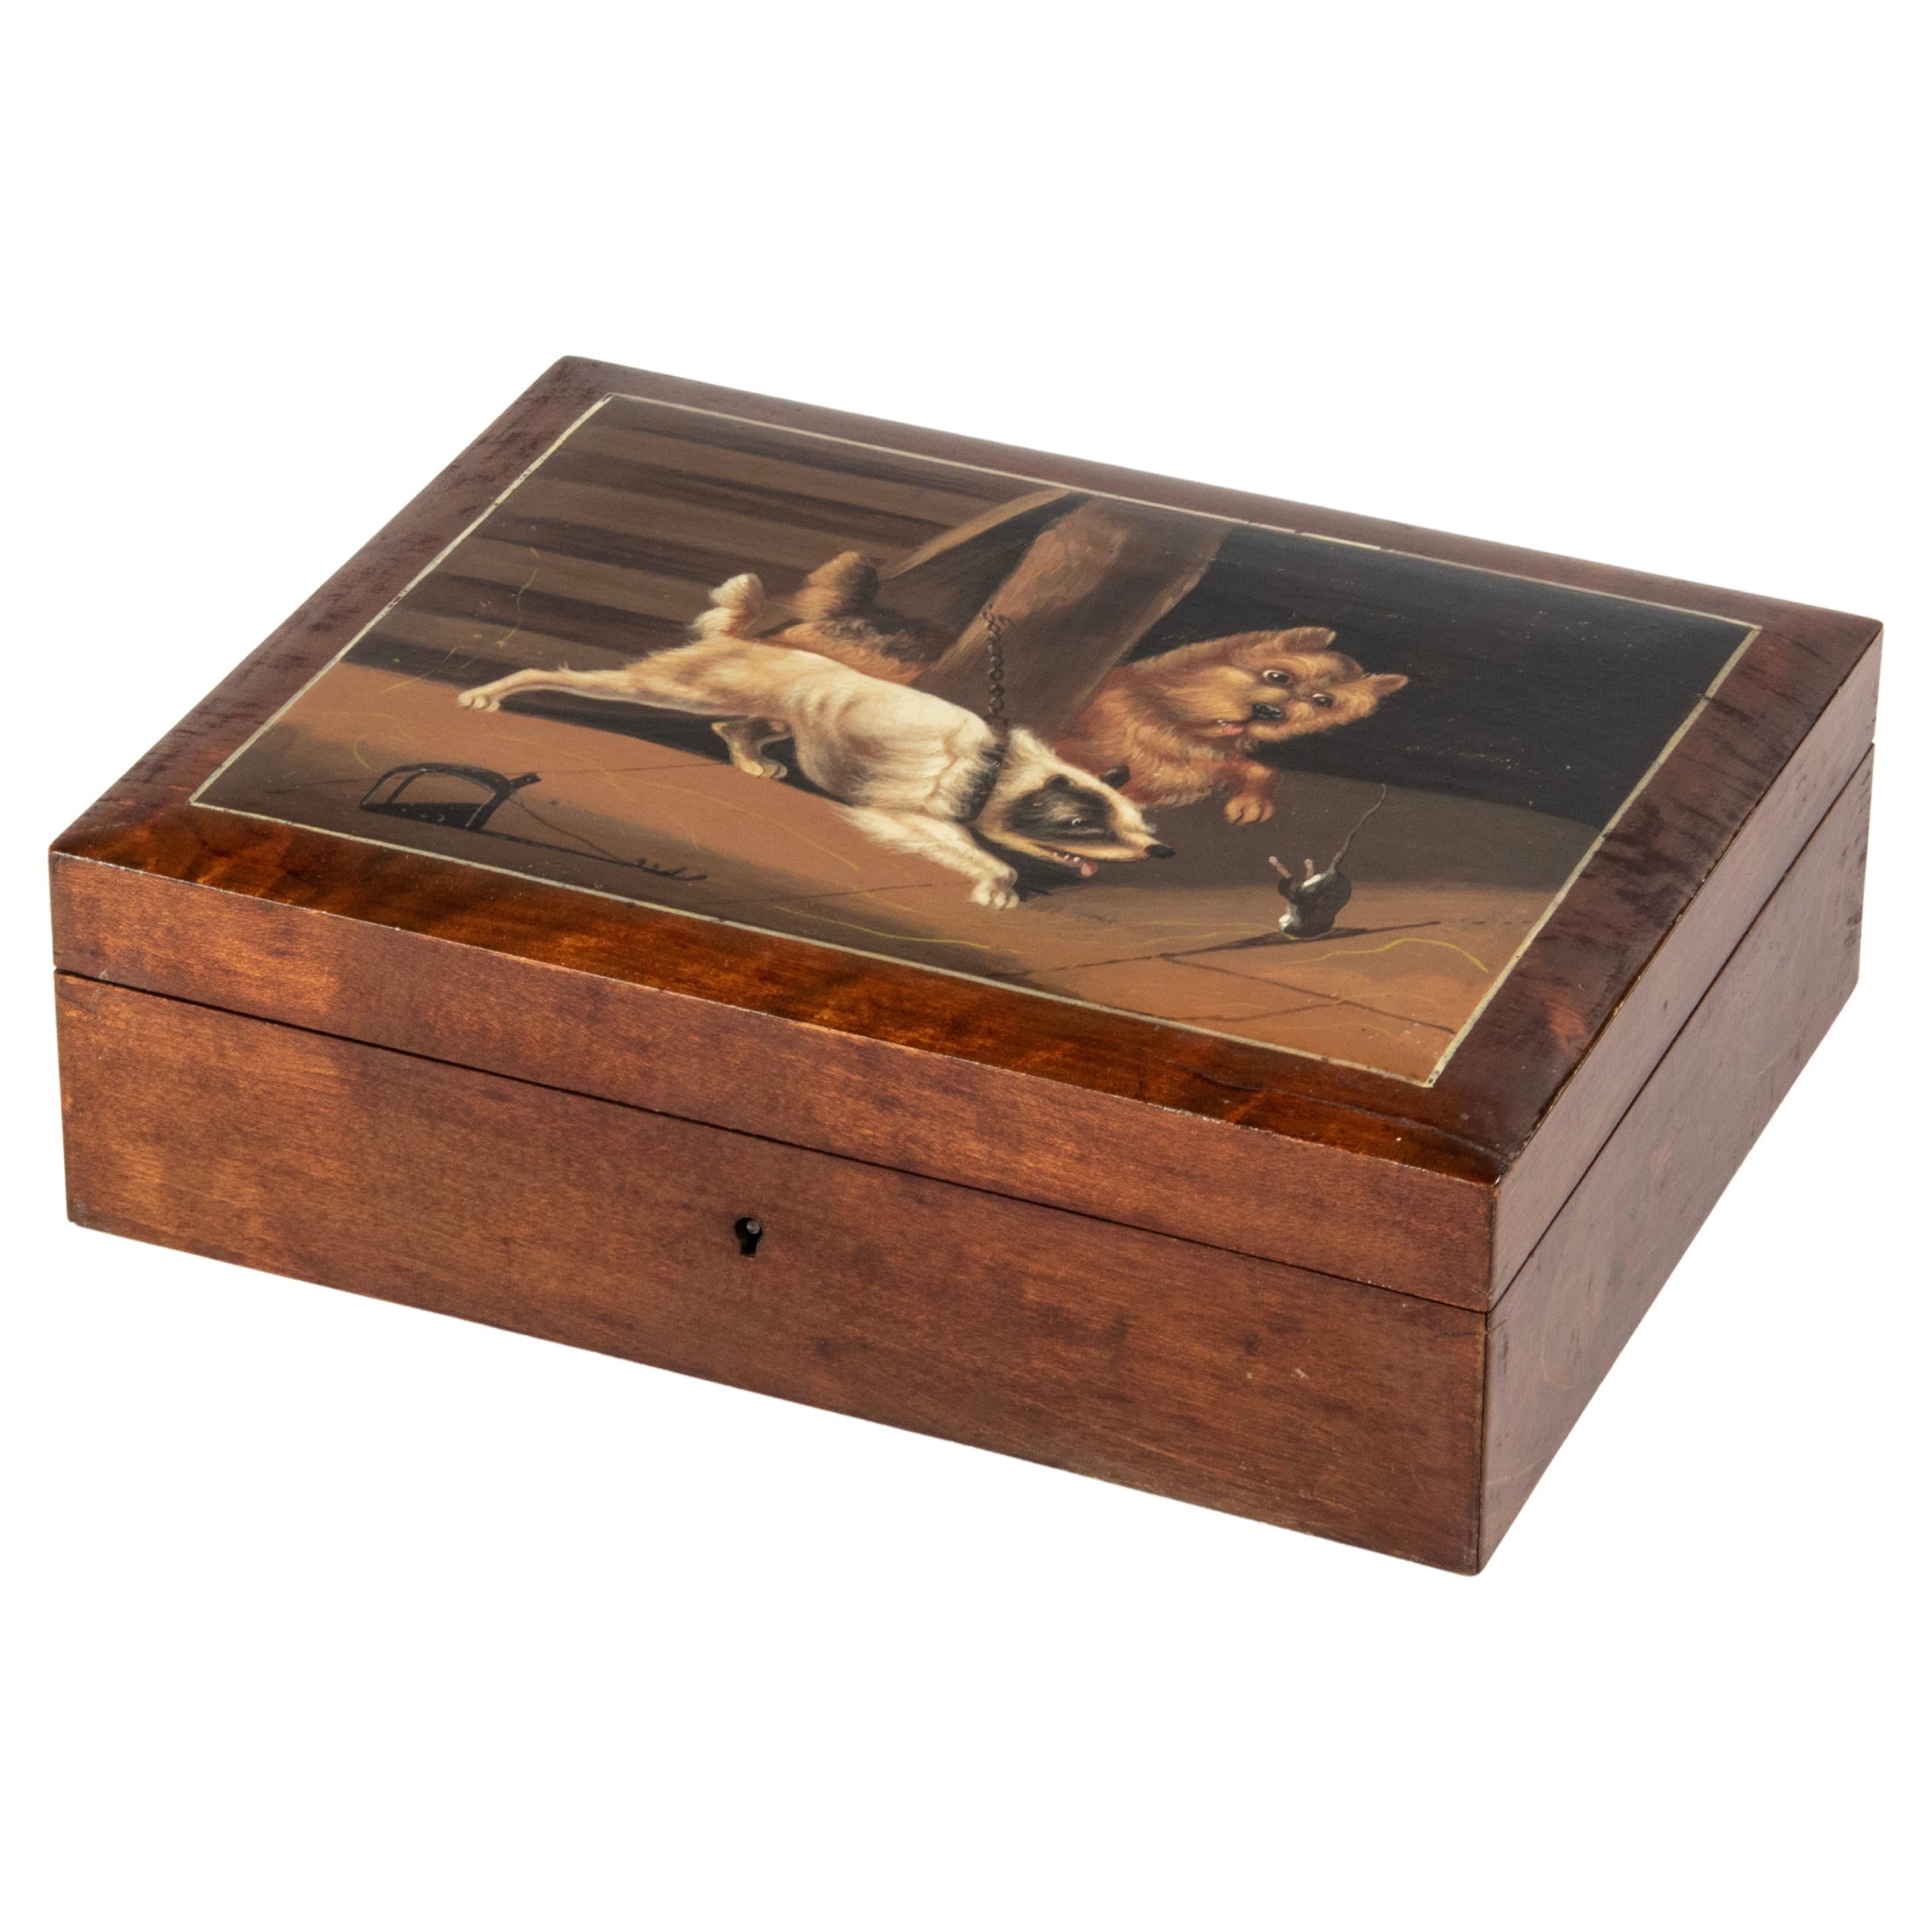 Dekorative Schachtel mit Hundegemäldedededeckel aus dem späten 19. Jahrhundert